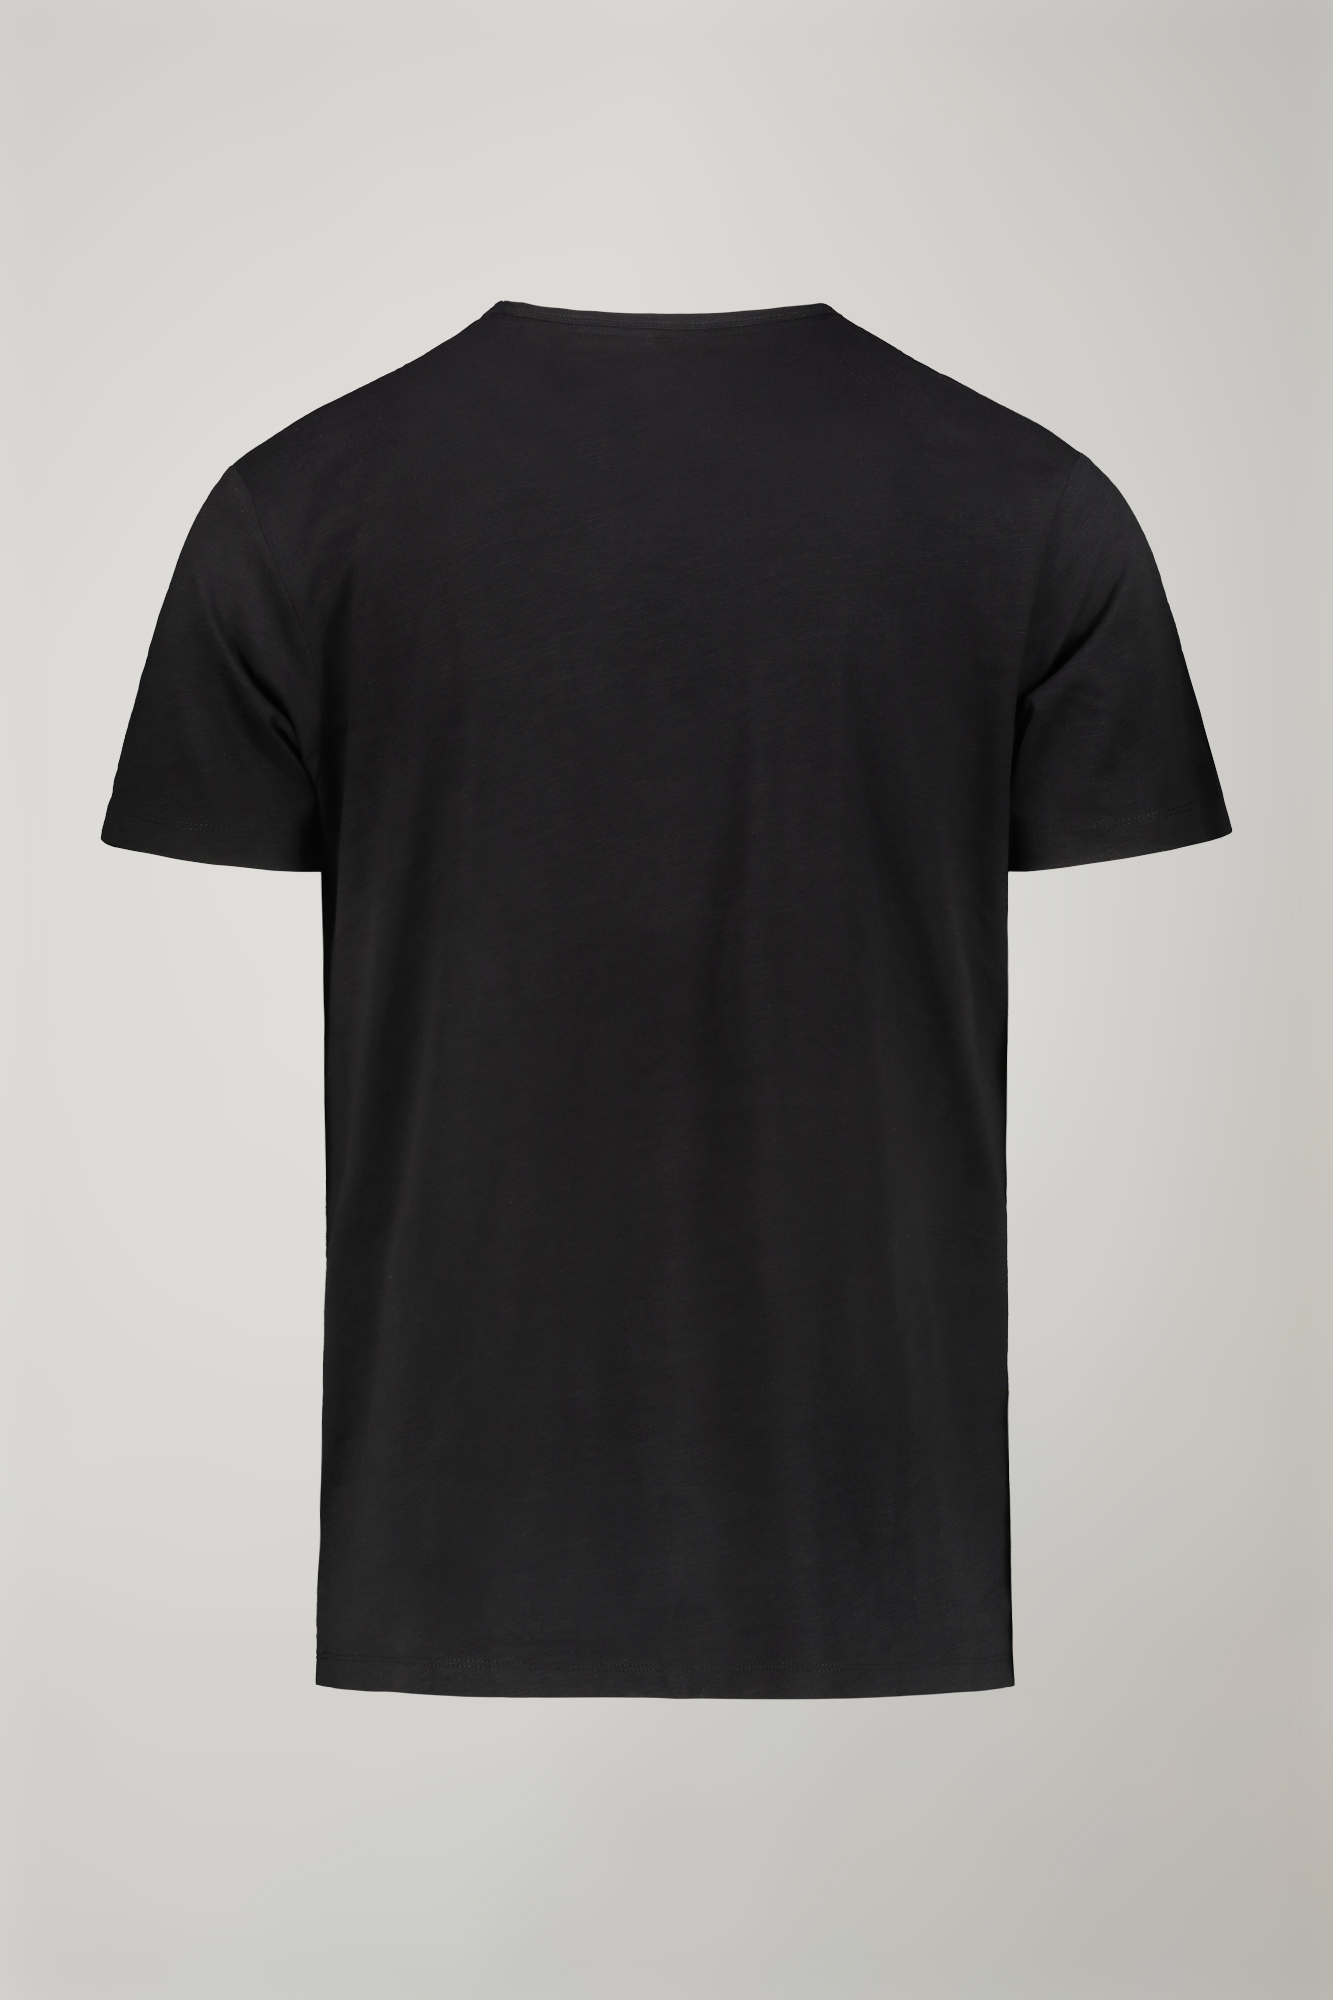 Men’s v-neck t-shirt 100% cotton flamed effect regular fit image number null